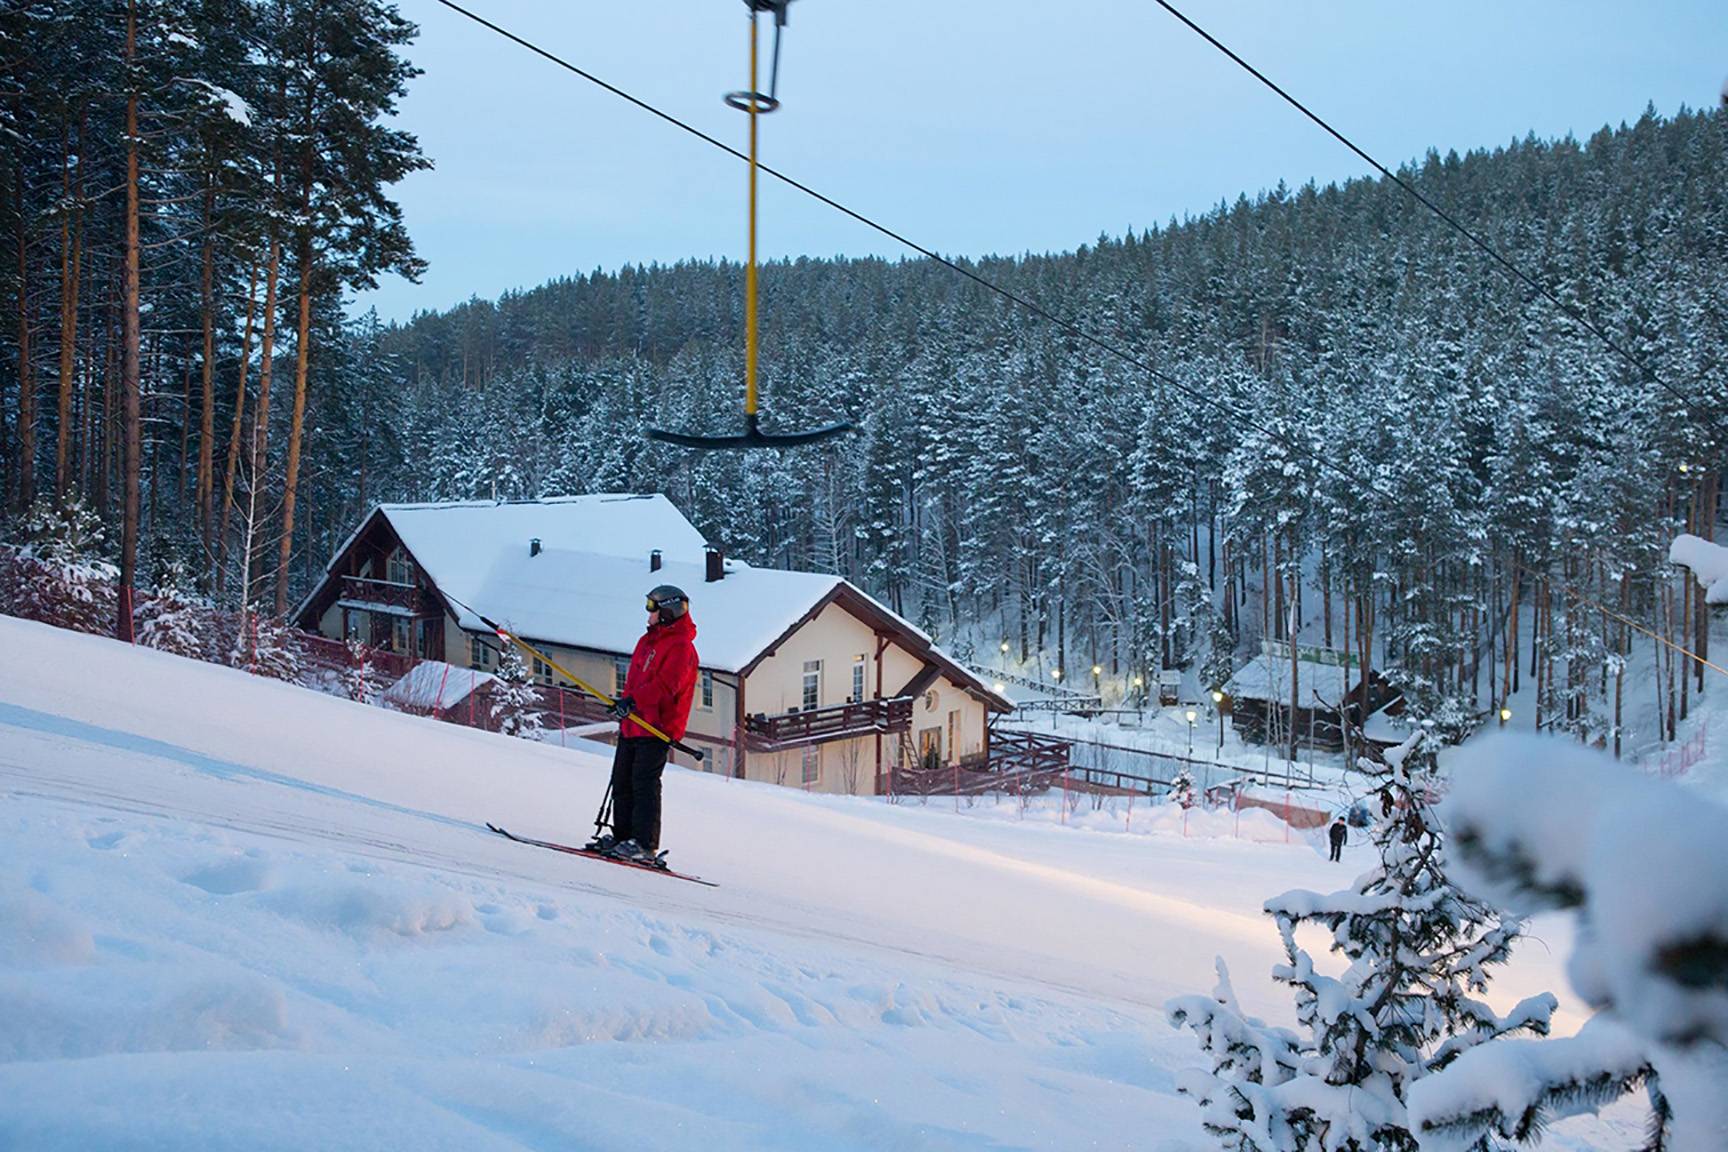 9 идей для отдыха в алтайском крае зимой. какая нравится вам?